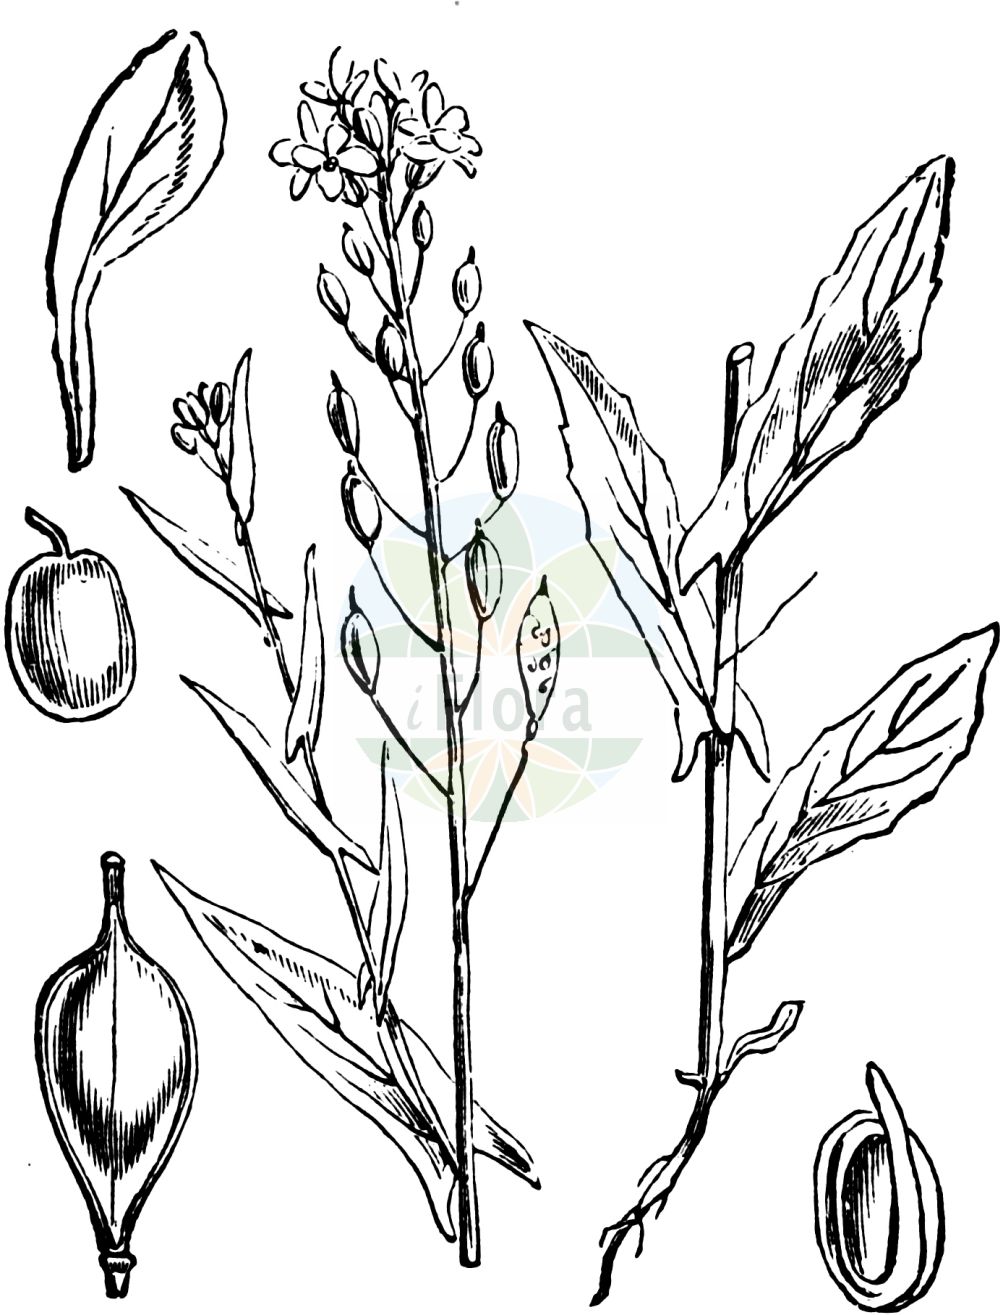 Historische Abbildung von Camelina sativa (Saat-Leindotter - Gold-of-Pleasure). Das Bild zeigt Blatt, Bluete, Frucht und Same. ---- Historical Drawing of Camelina sativa (Saat-Leindotter - Gold-of-Pleasure). The image is showing leaf, flower, fruit and seed.(Camelina sativa,Saat-Leindotter,Gold-of-Pleasure,Camelina caucasica,Camelina glabrata,Camelina sativa,Camelina sativa (L.) Crantz,Myagrum sativum,Saat-Leindotter,Saat-Leindotter,Gold-of-Pleasure,Large-seed False Flax,Camelina,Leindotter,False Flax,Brassicaceae,Kreuzblütler,Cabbage family,Blatt,Bluete,Frucht,Same,leaf,flower,fruit,seed,Fitch et al. (1880))